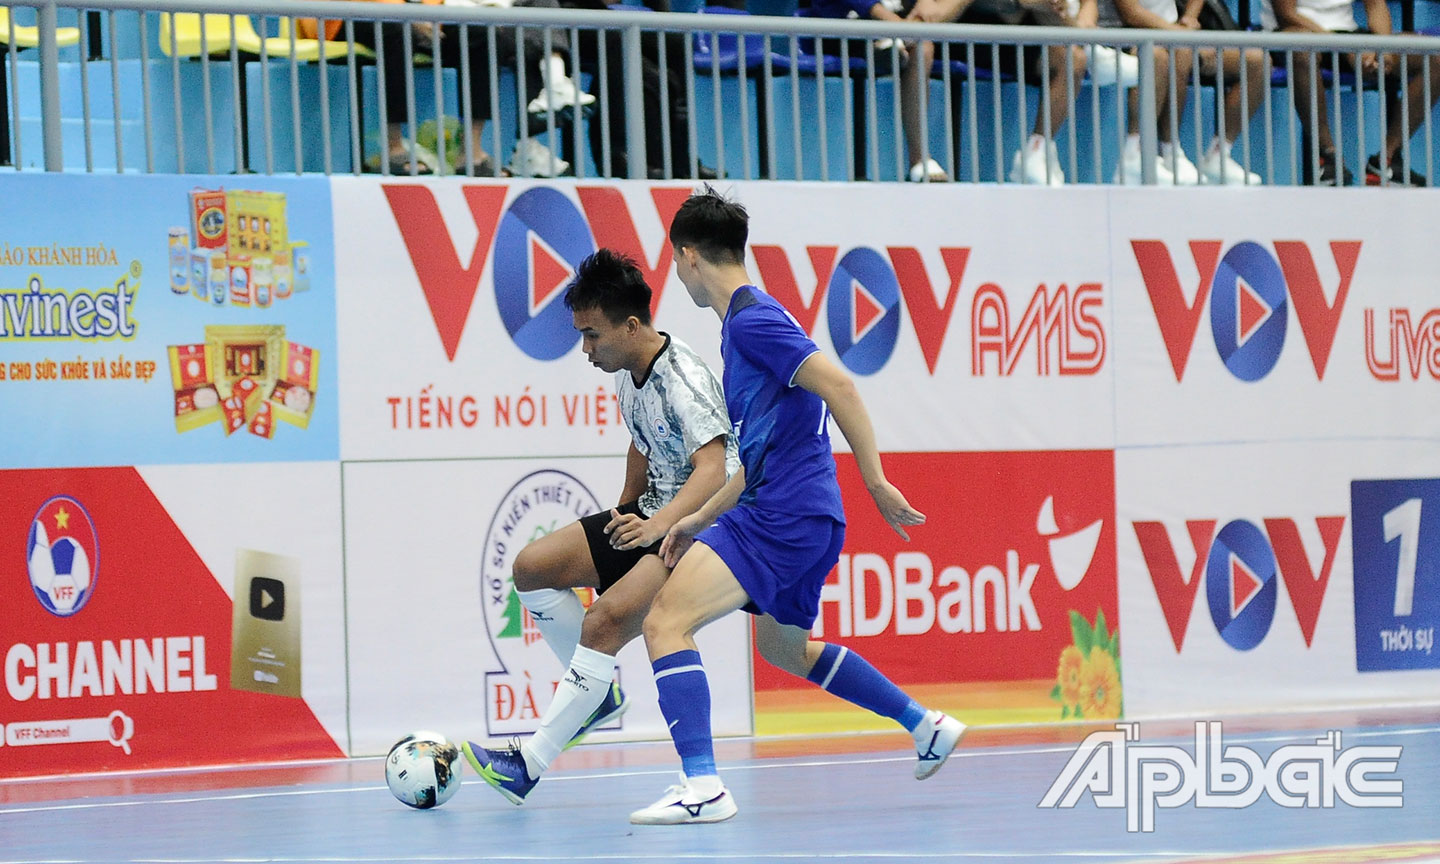 Giải Futsal VĐQG 2022: Thái Sơn Nam đã biết chiến thắng sau 3 vòng